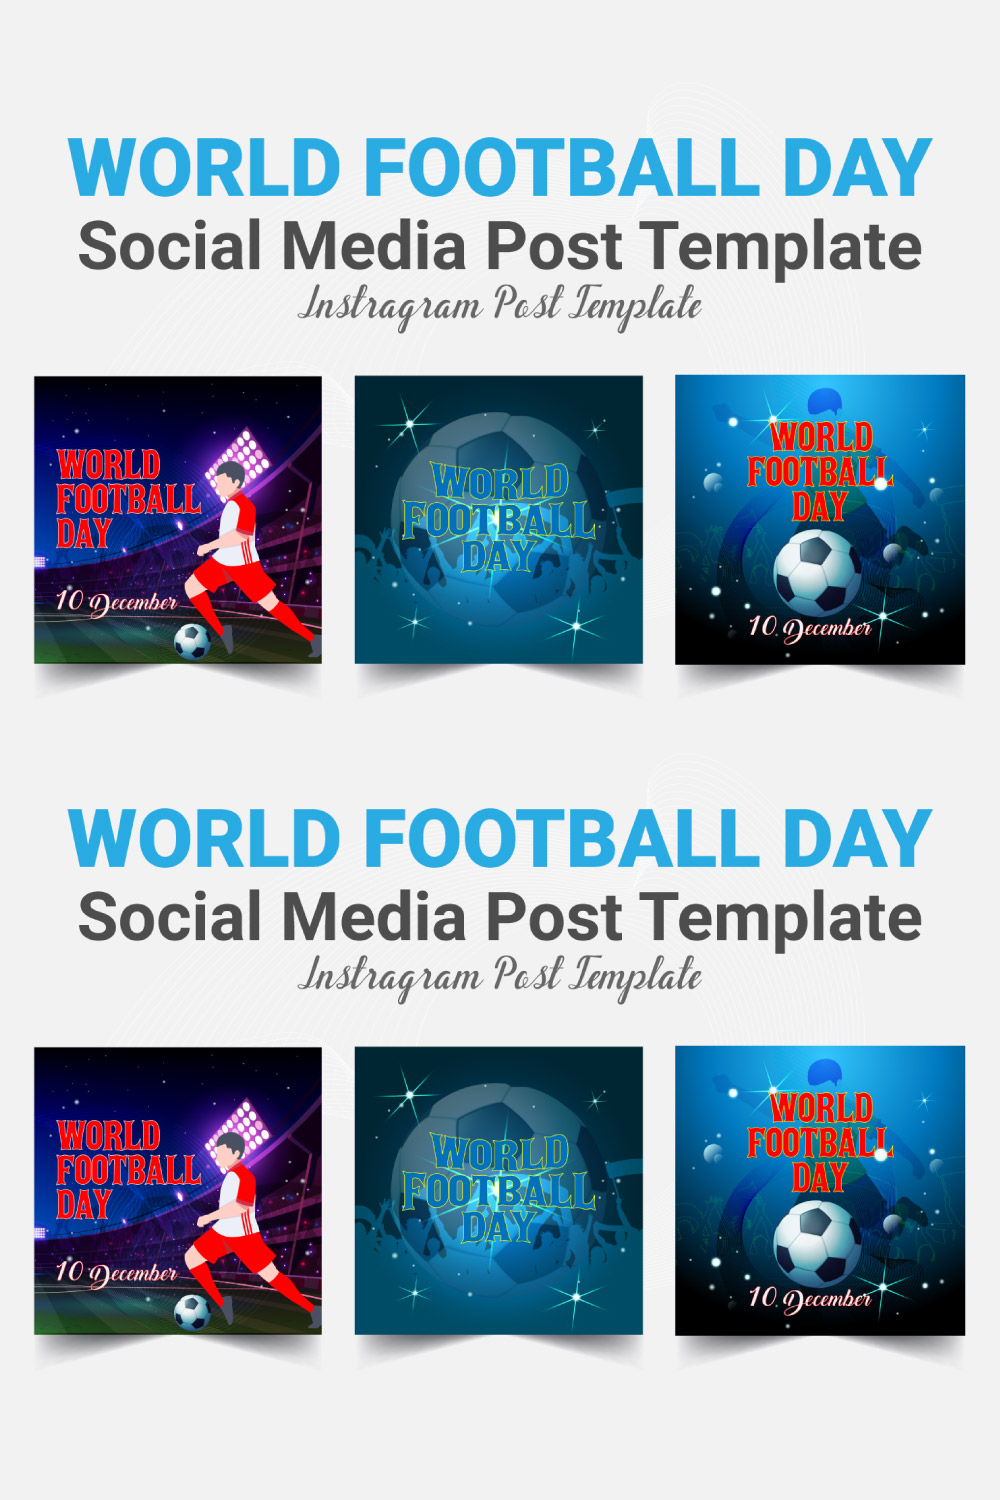 World Football Day Instagram Post pinterest image.